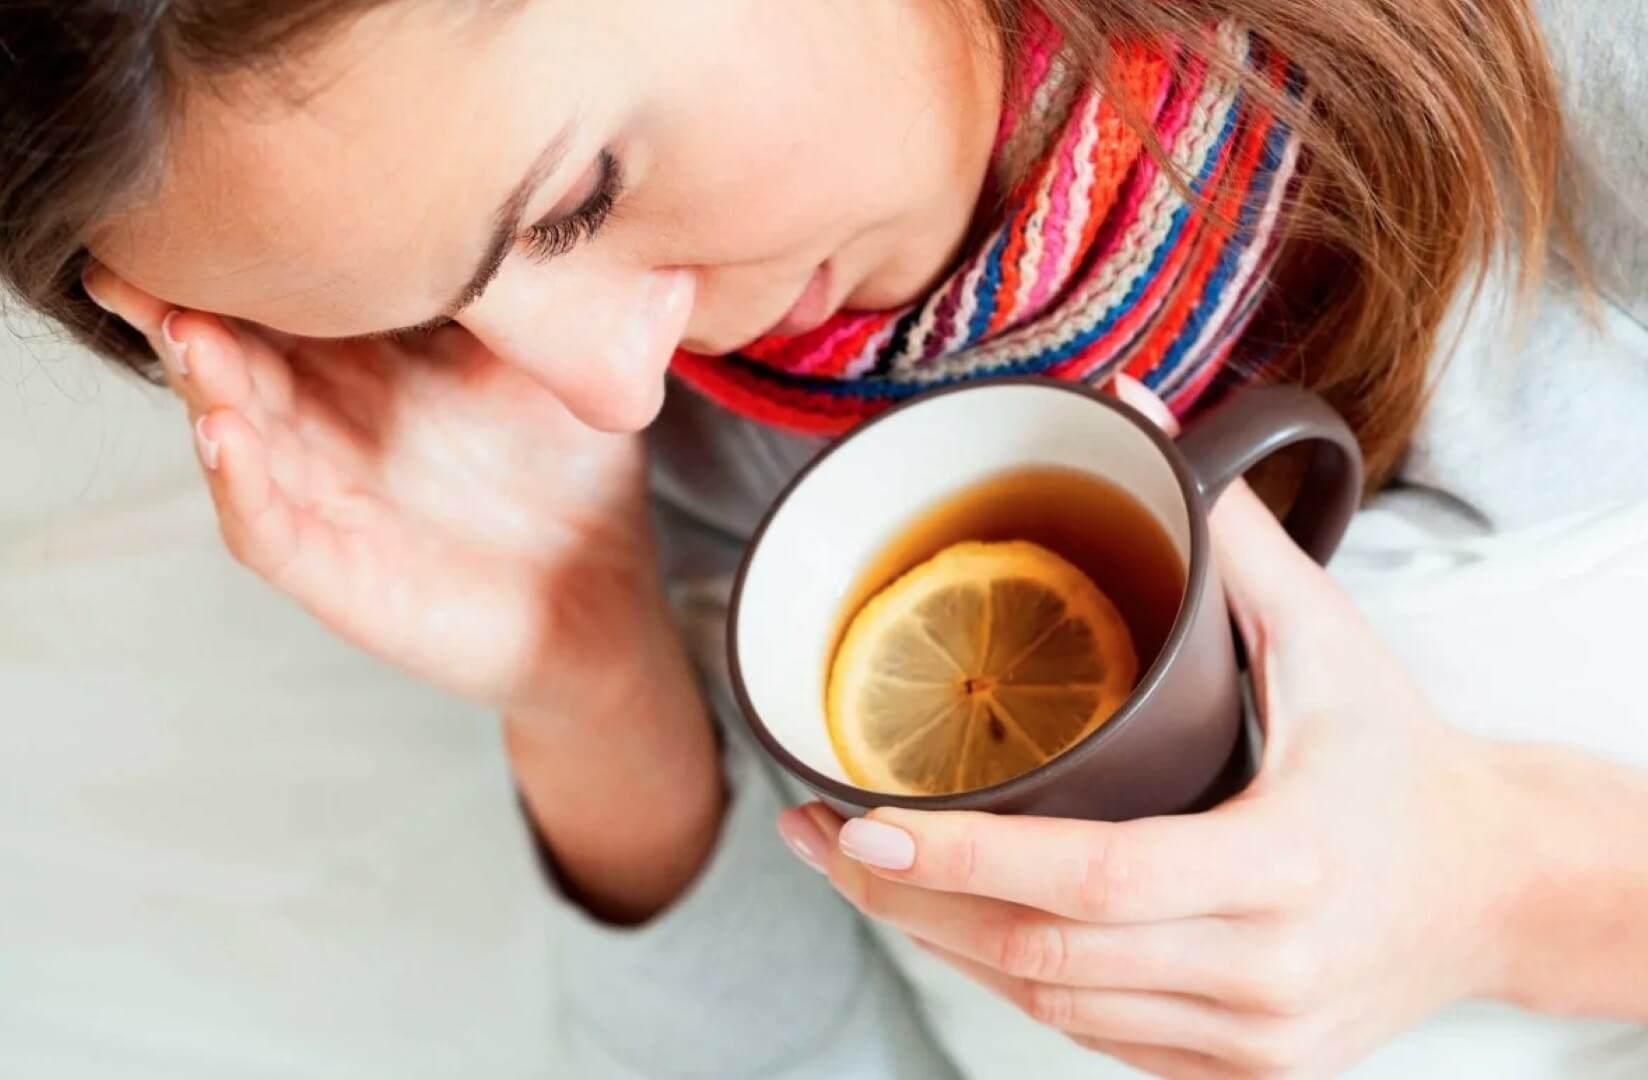 Можно ли пить кофе при температуре. Во время простуды лучше ограничиться теплым чаем с лимоном, никакого кофе. Фото.